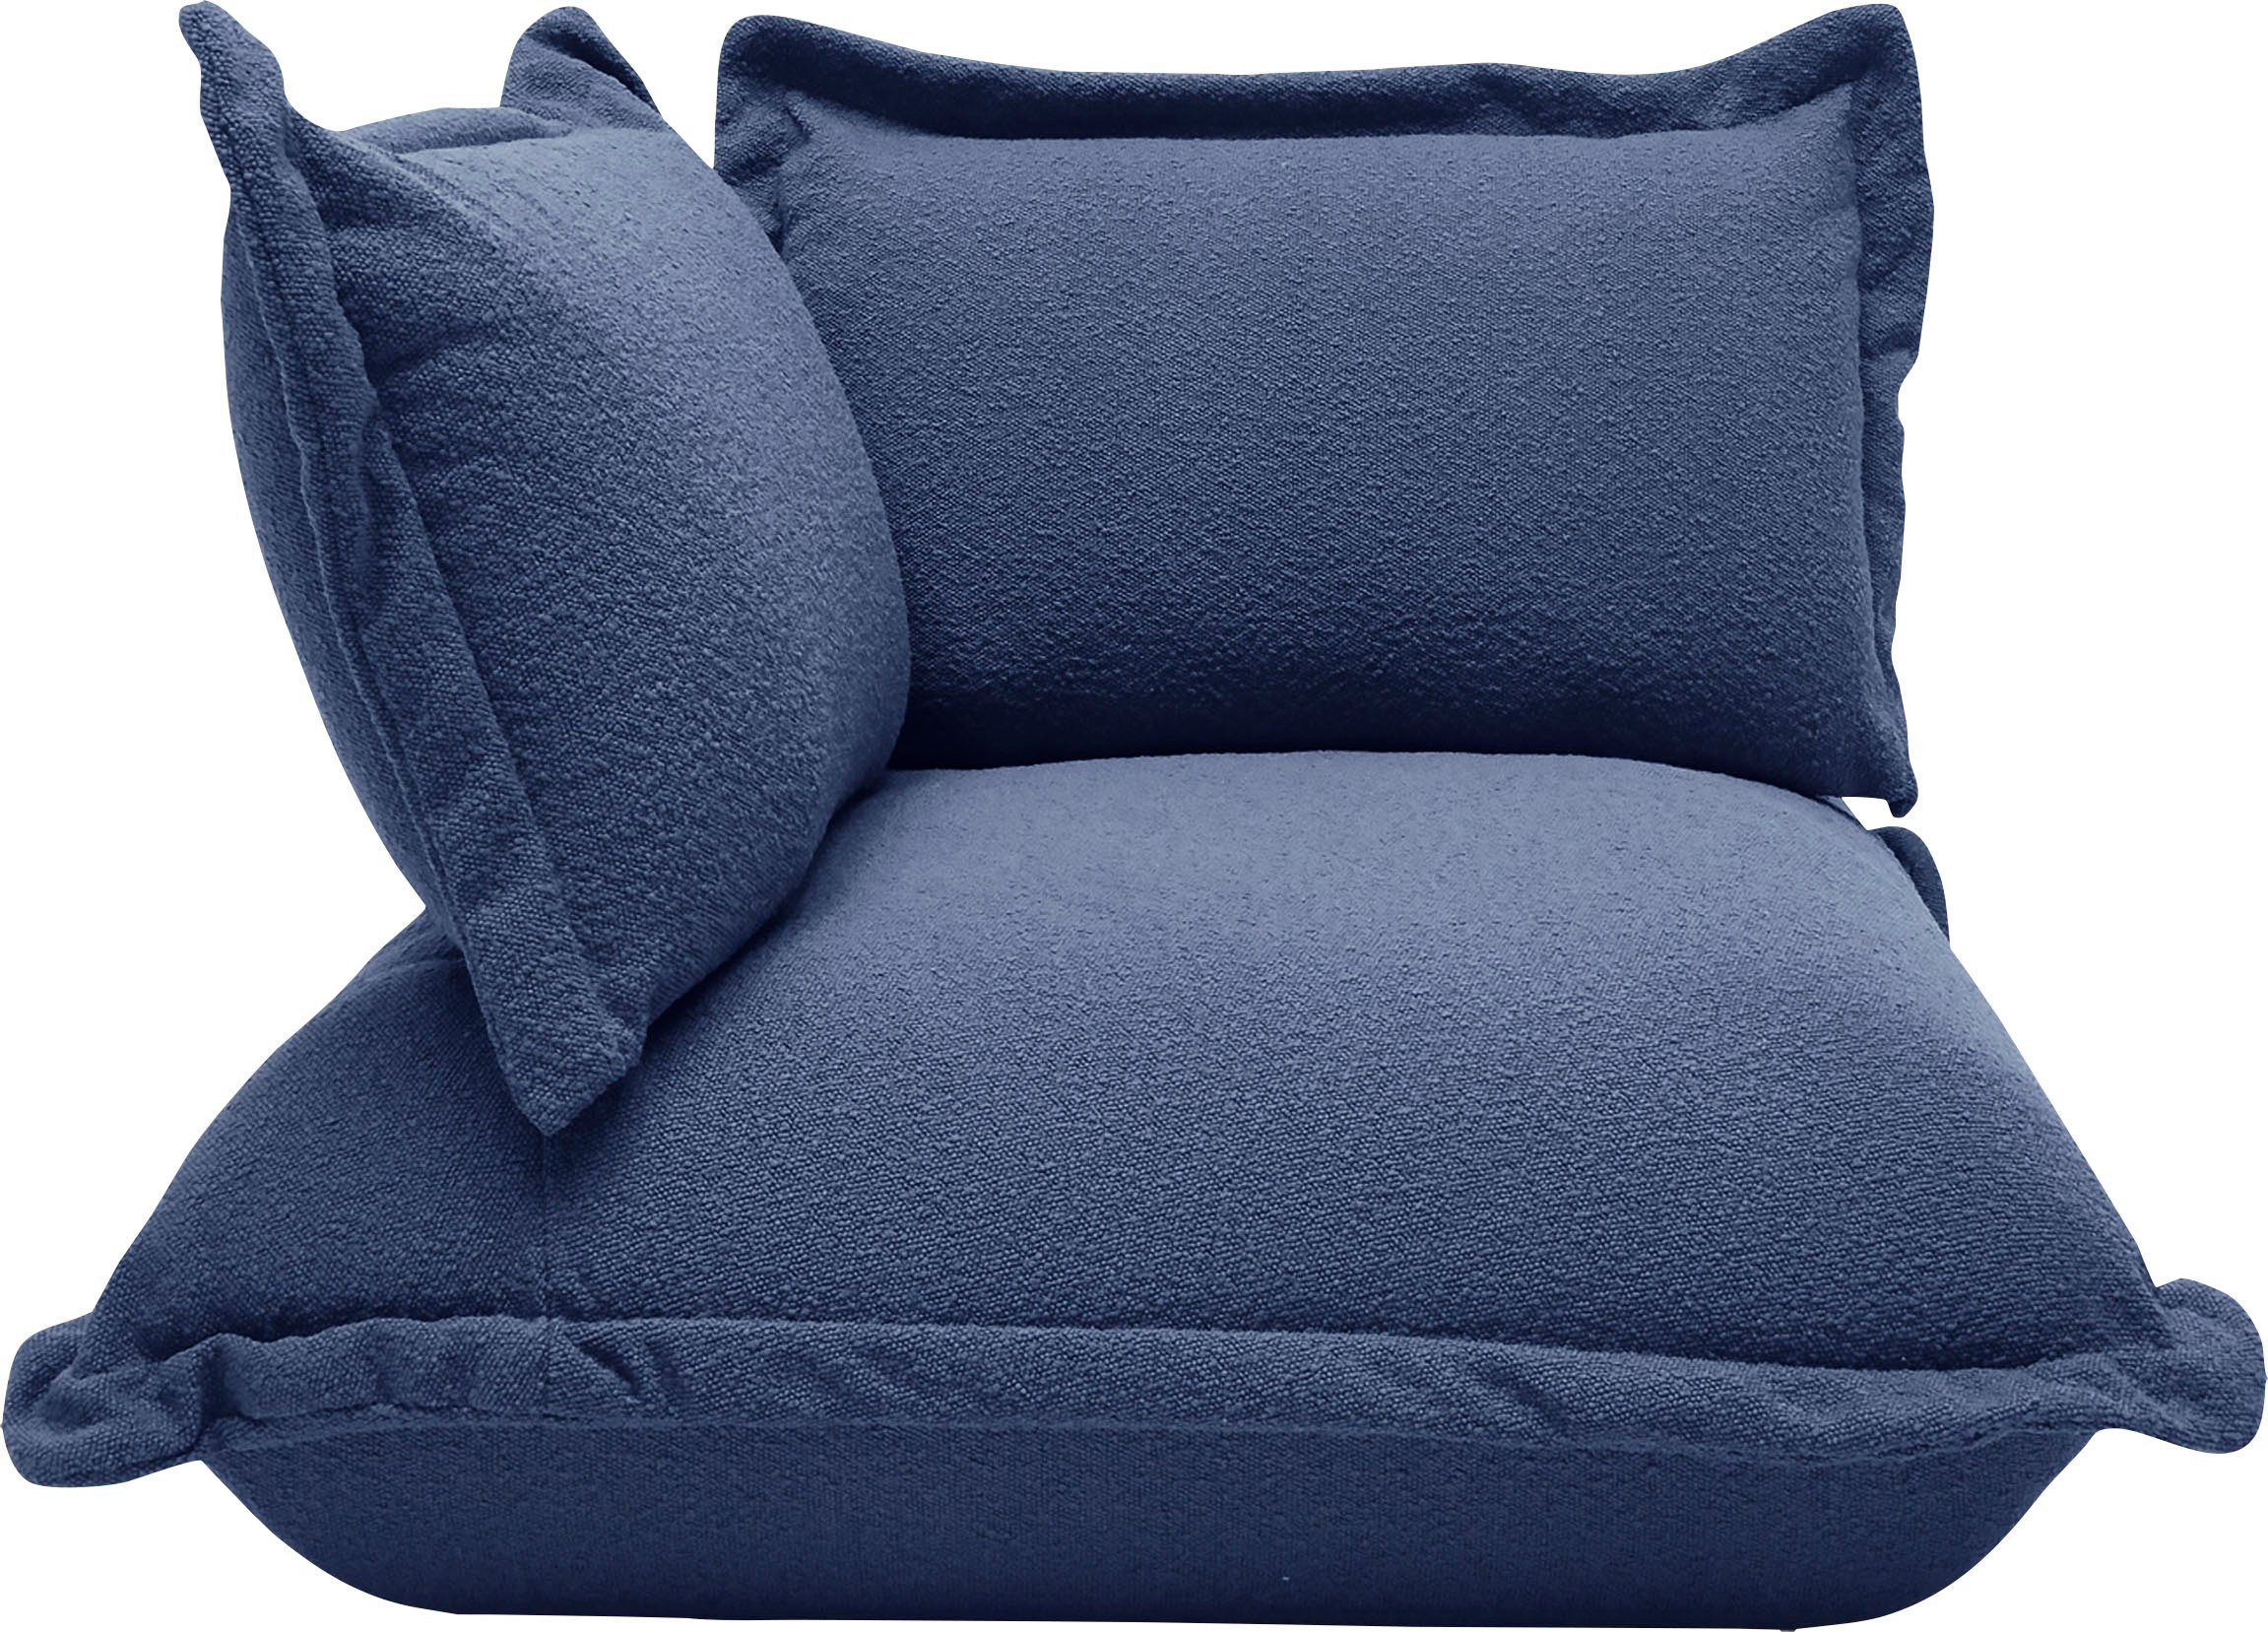 TOM TAILOR HOME Sofa-Eckelement Cushion, im Kissenlook, softer Kaltschaumpolsterung mit lässigen